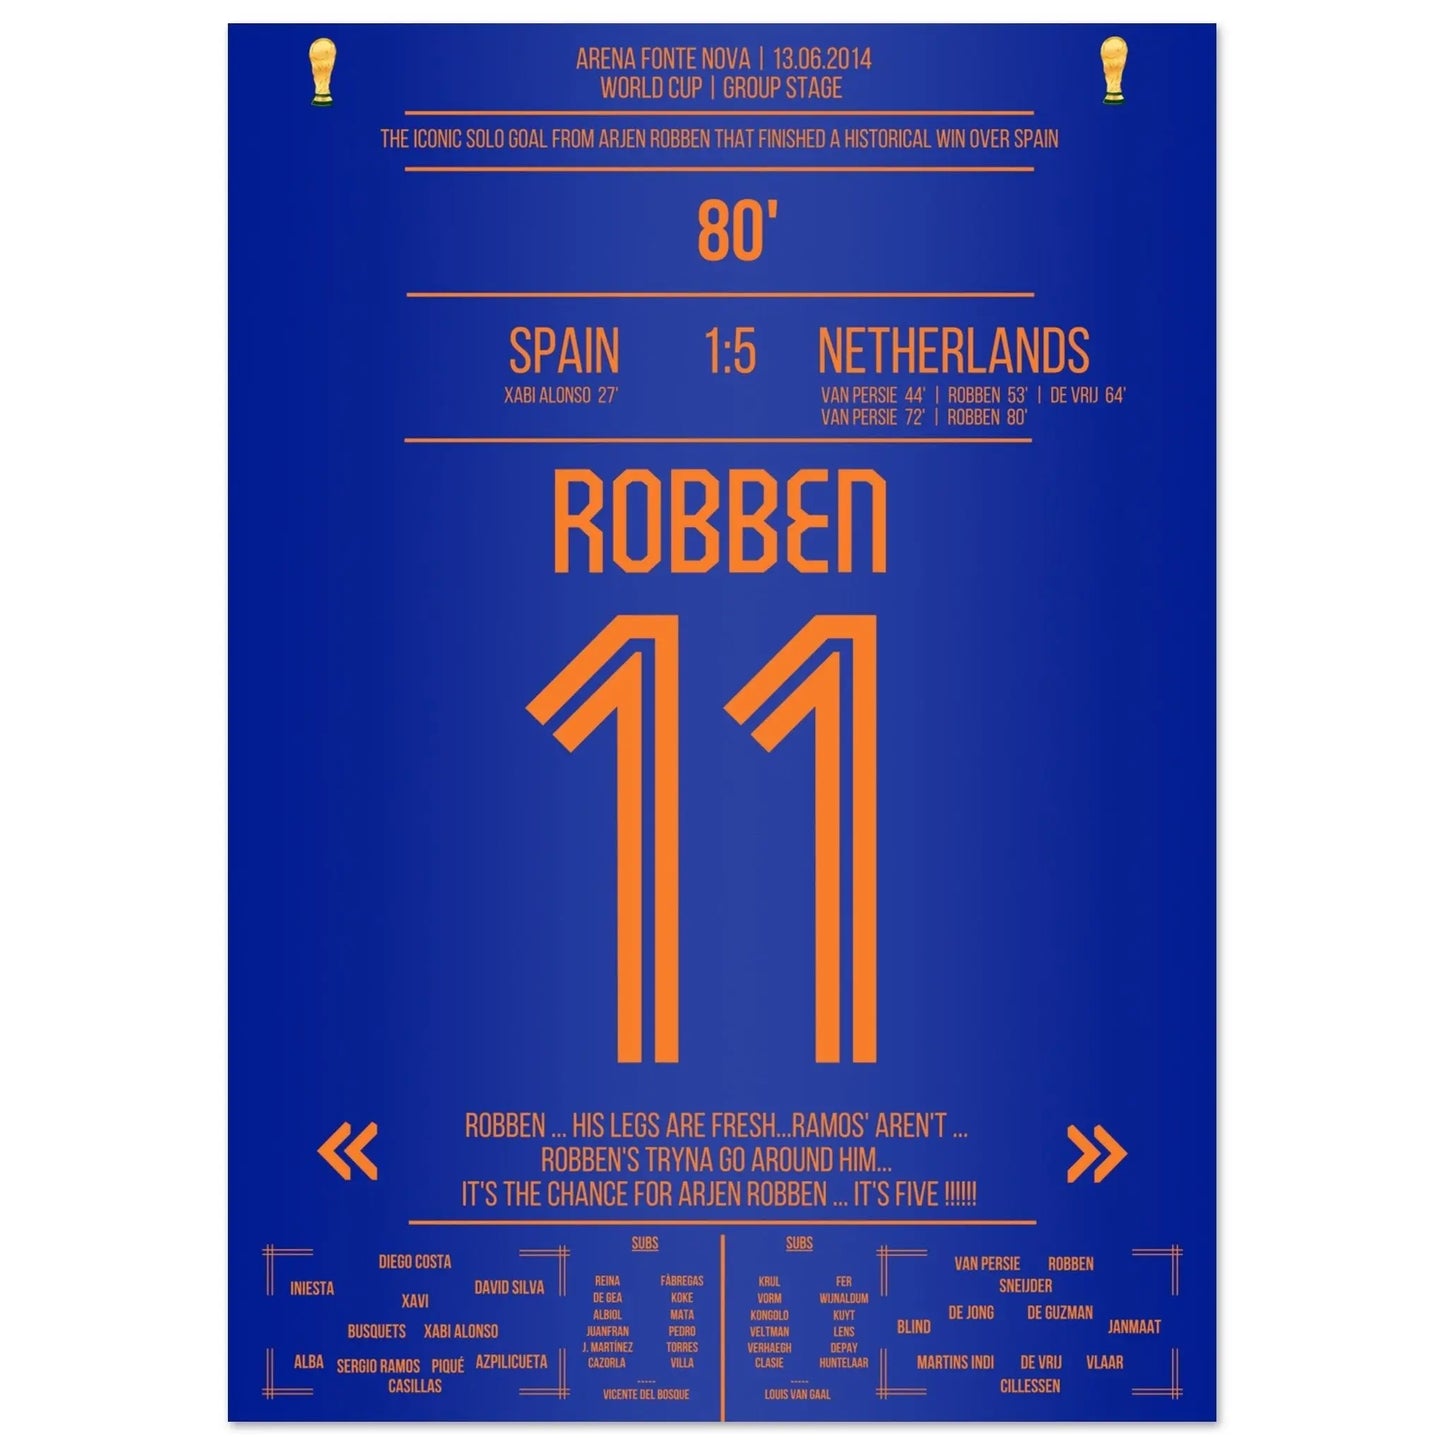 El gol en solitario de Robben contra España en el Mundial de 2014